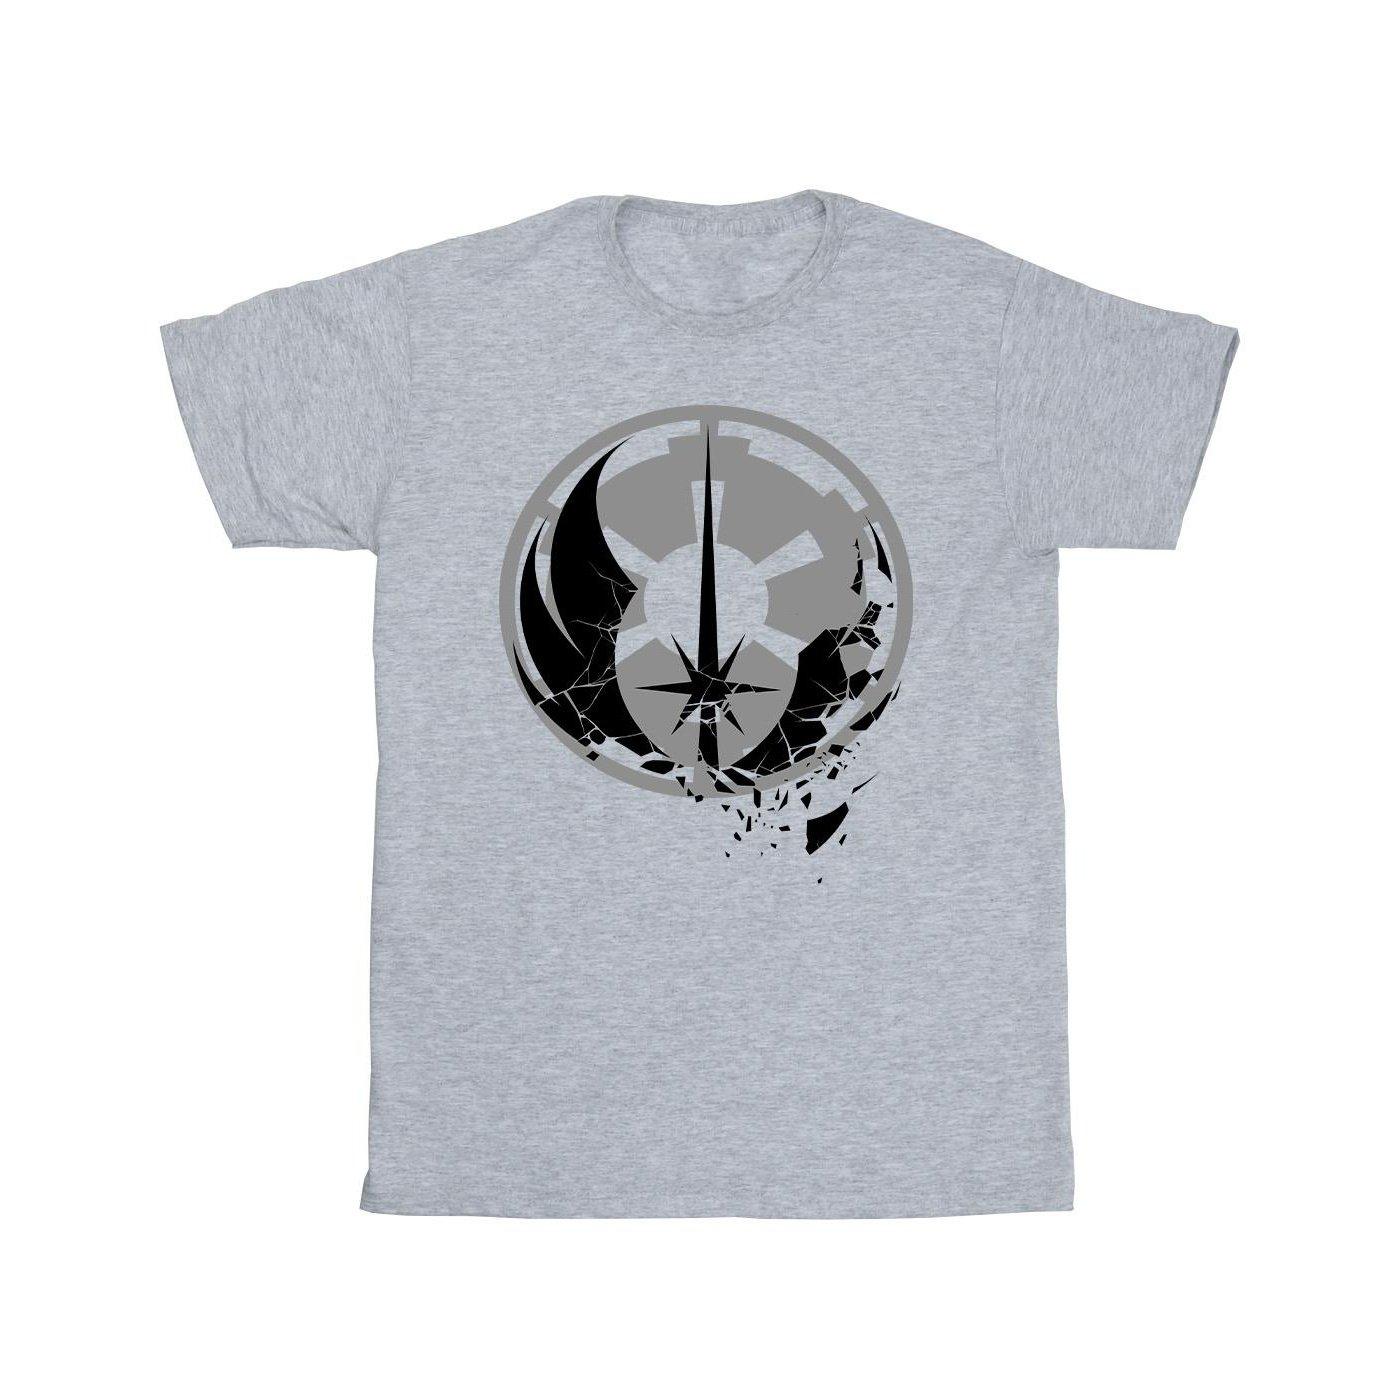 Obiwan Kenobi Fractured Logos Tshirt Jungen Grau 104 von STAR WARS